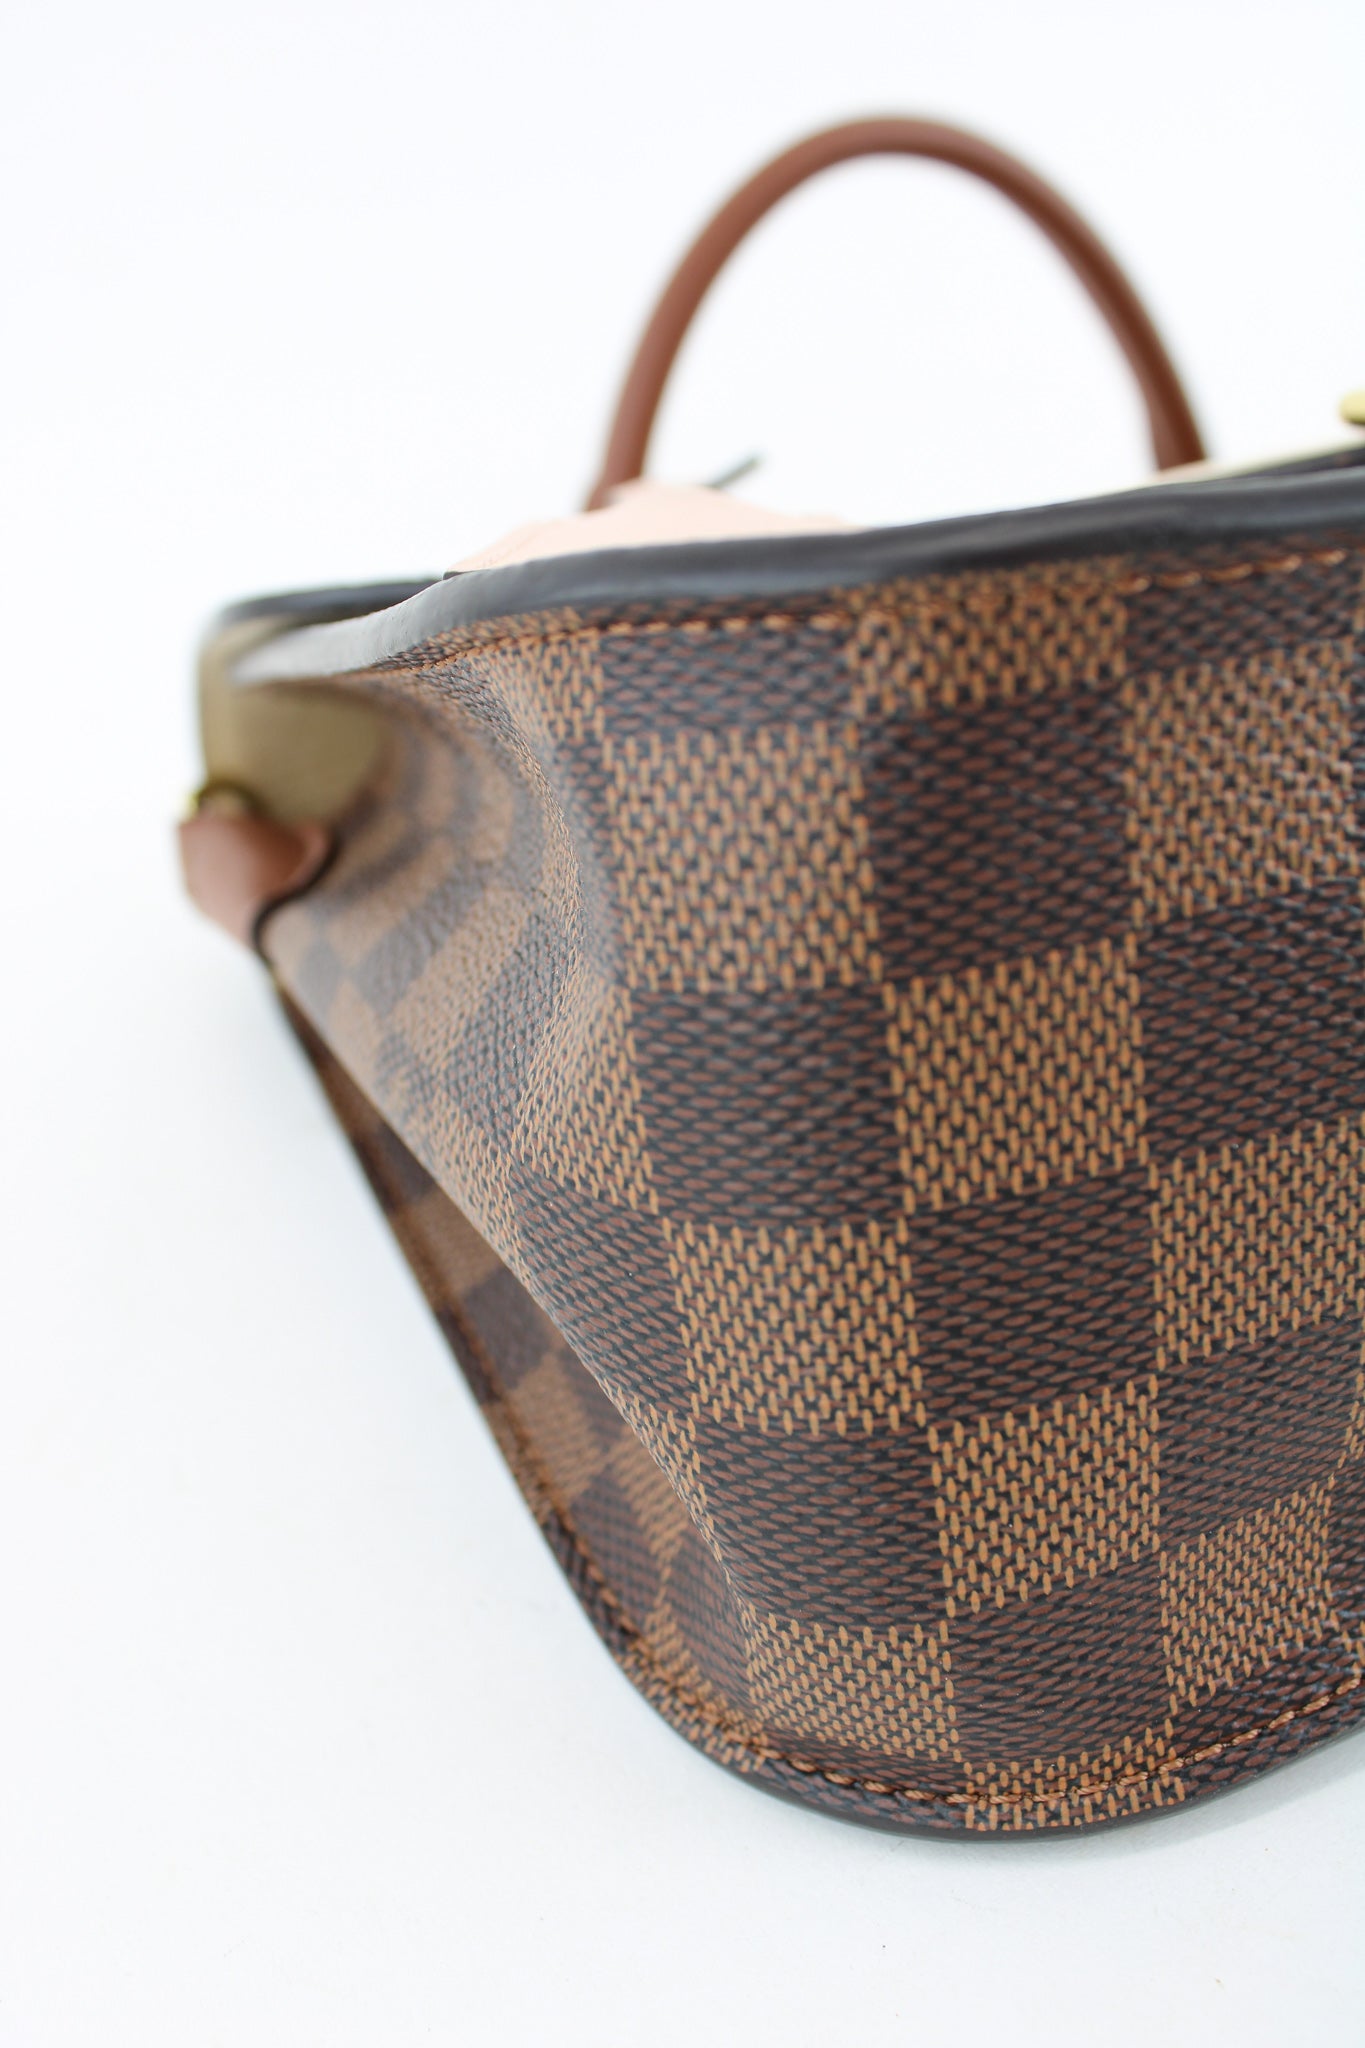 Louis Vuitton, Bags, Louis Vuitton Beaumarchais Womens Handbag N447  Damier Ebene Brown Venus